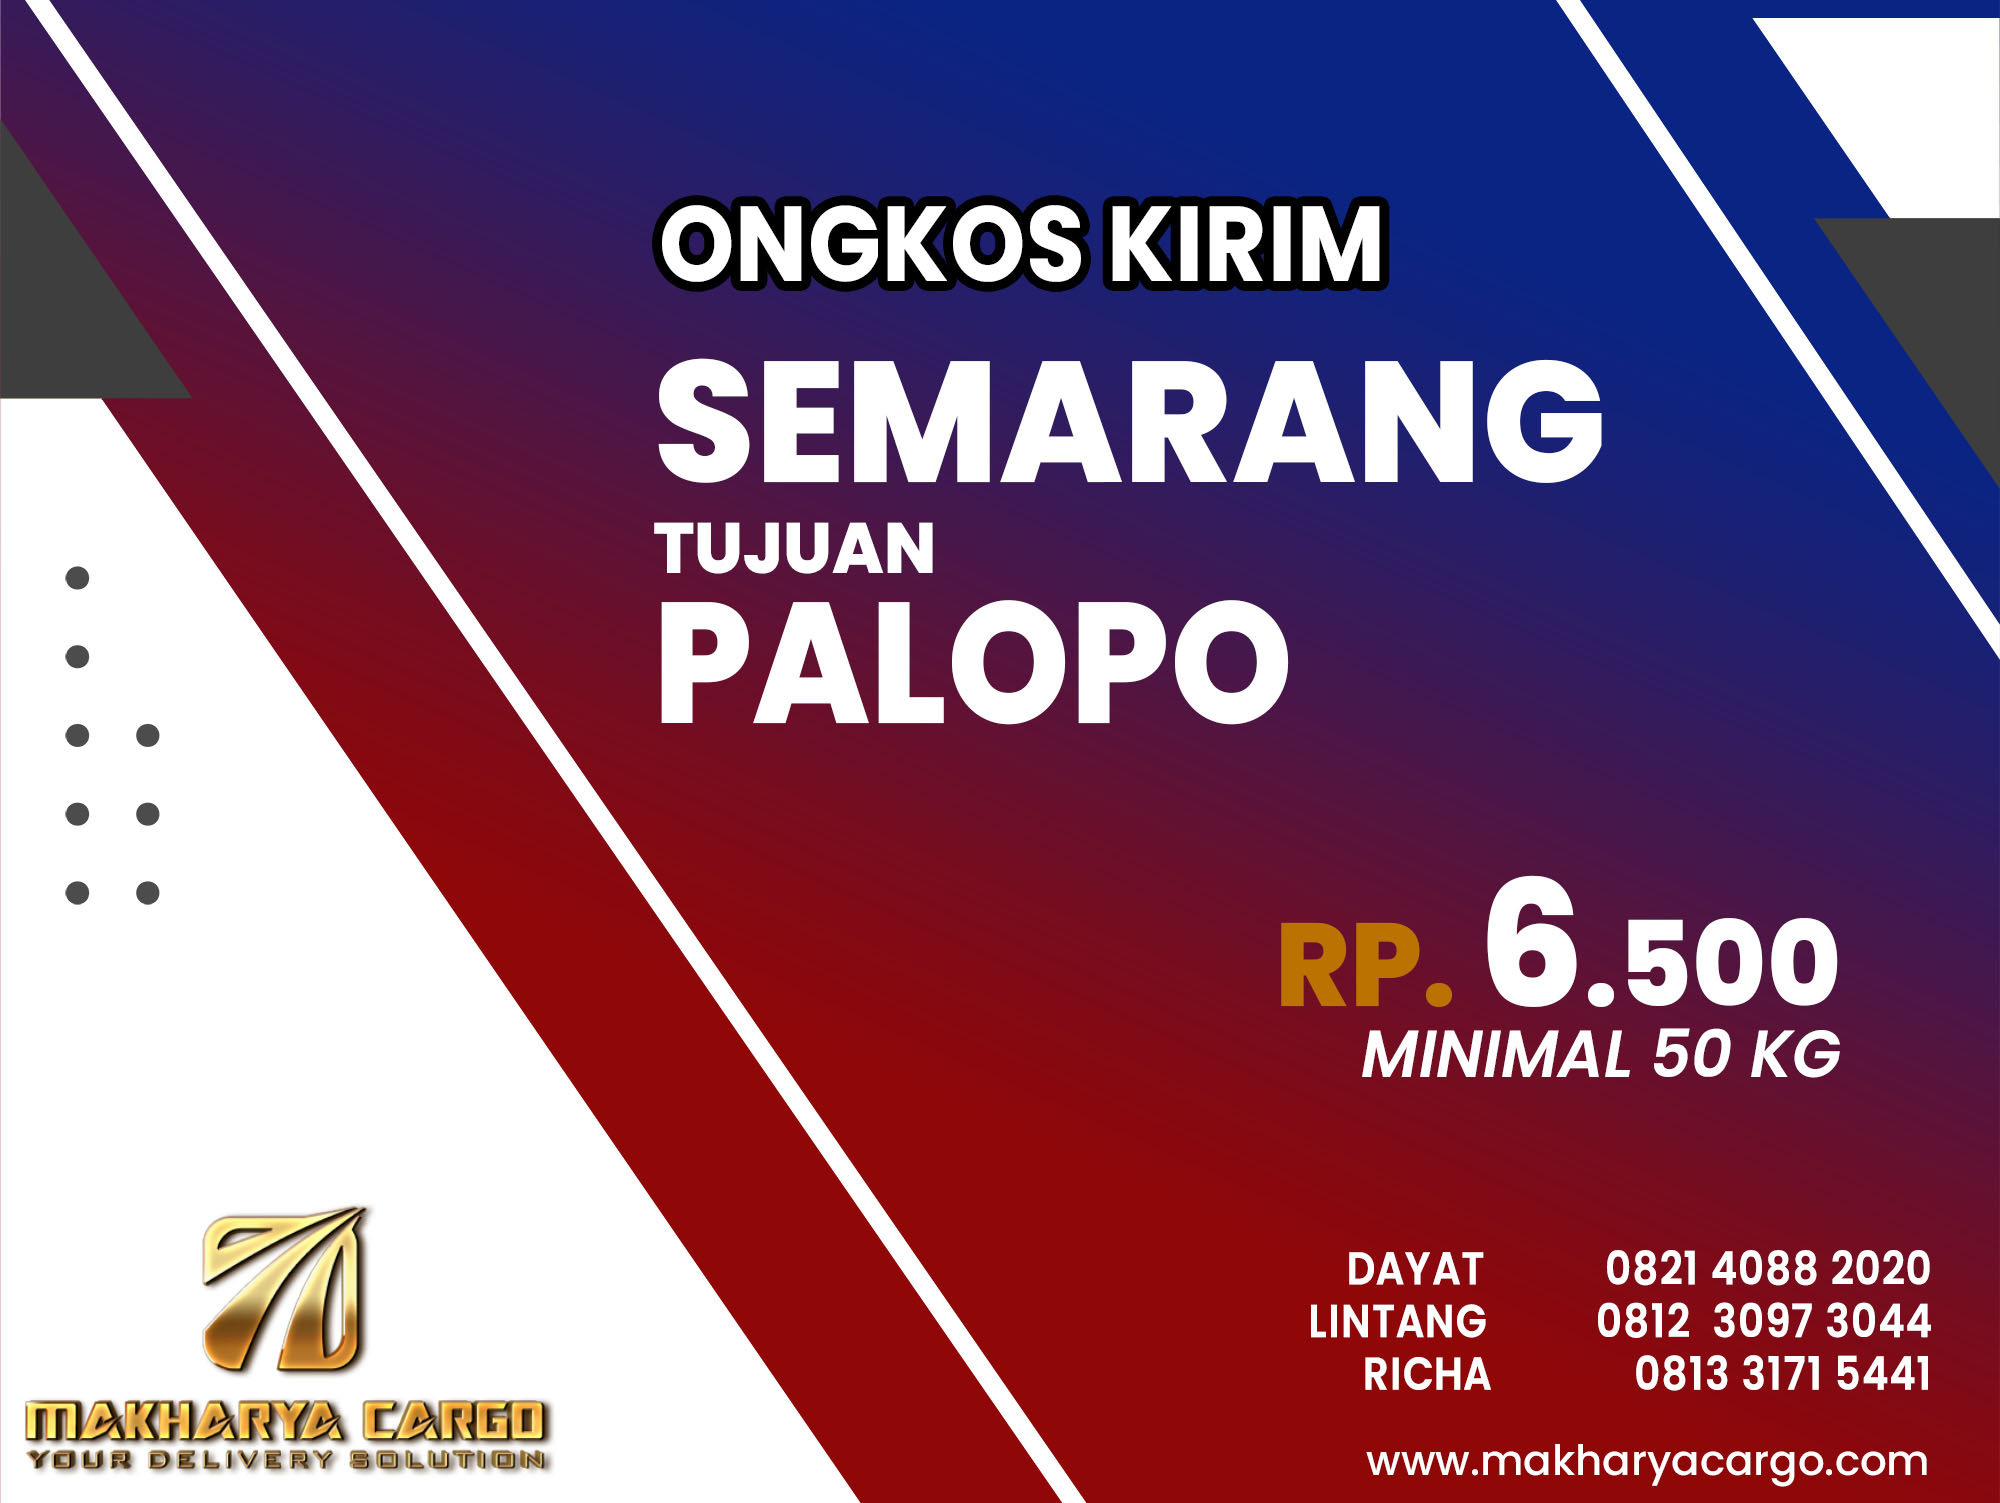 Ongkos Kirim Semarang Palopo